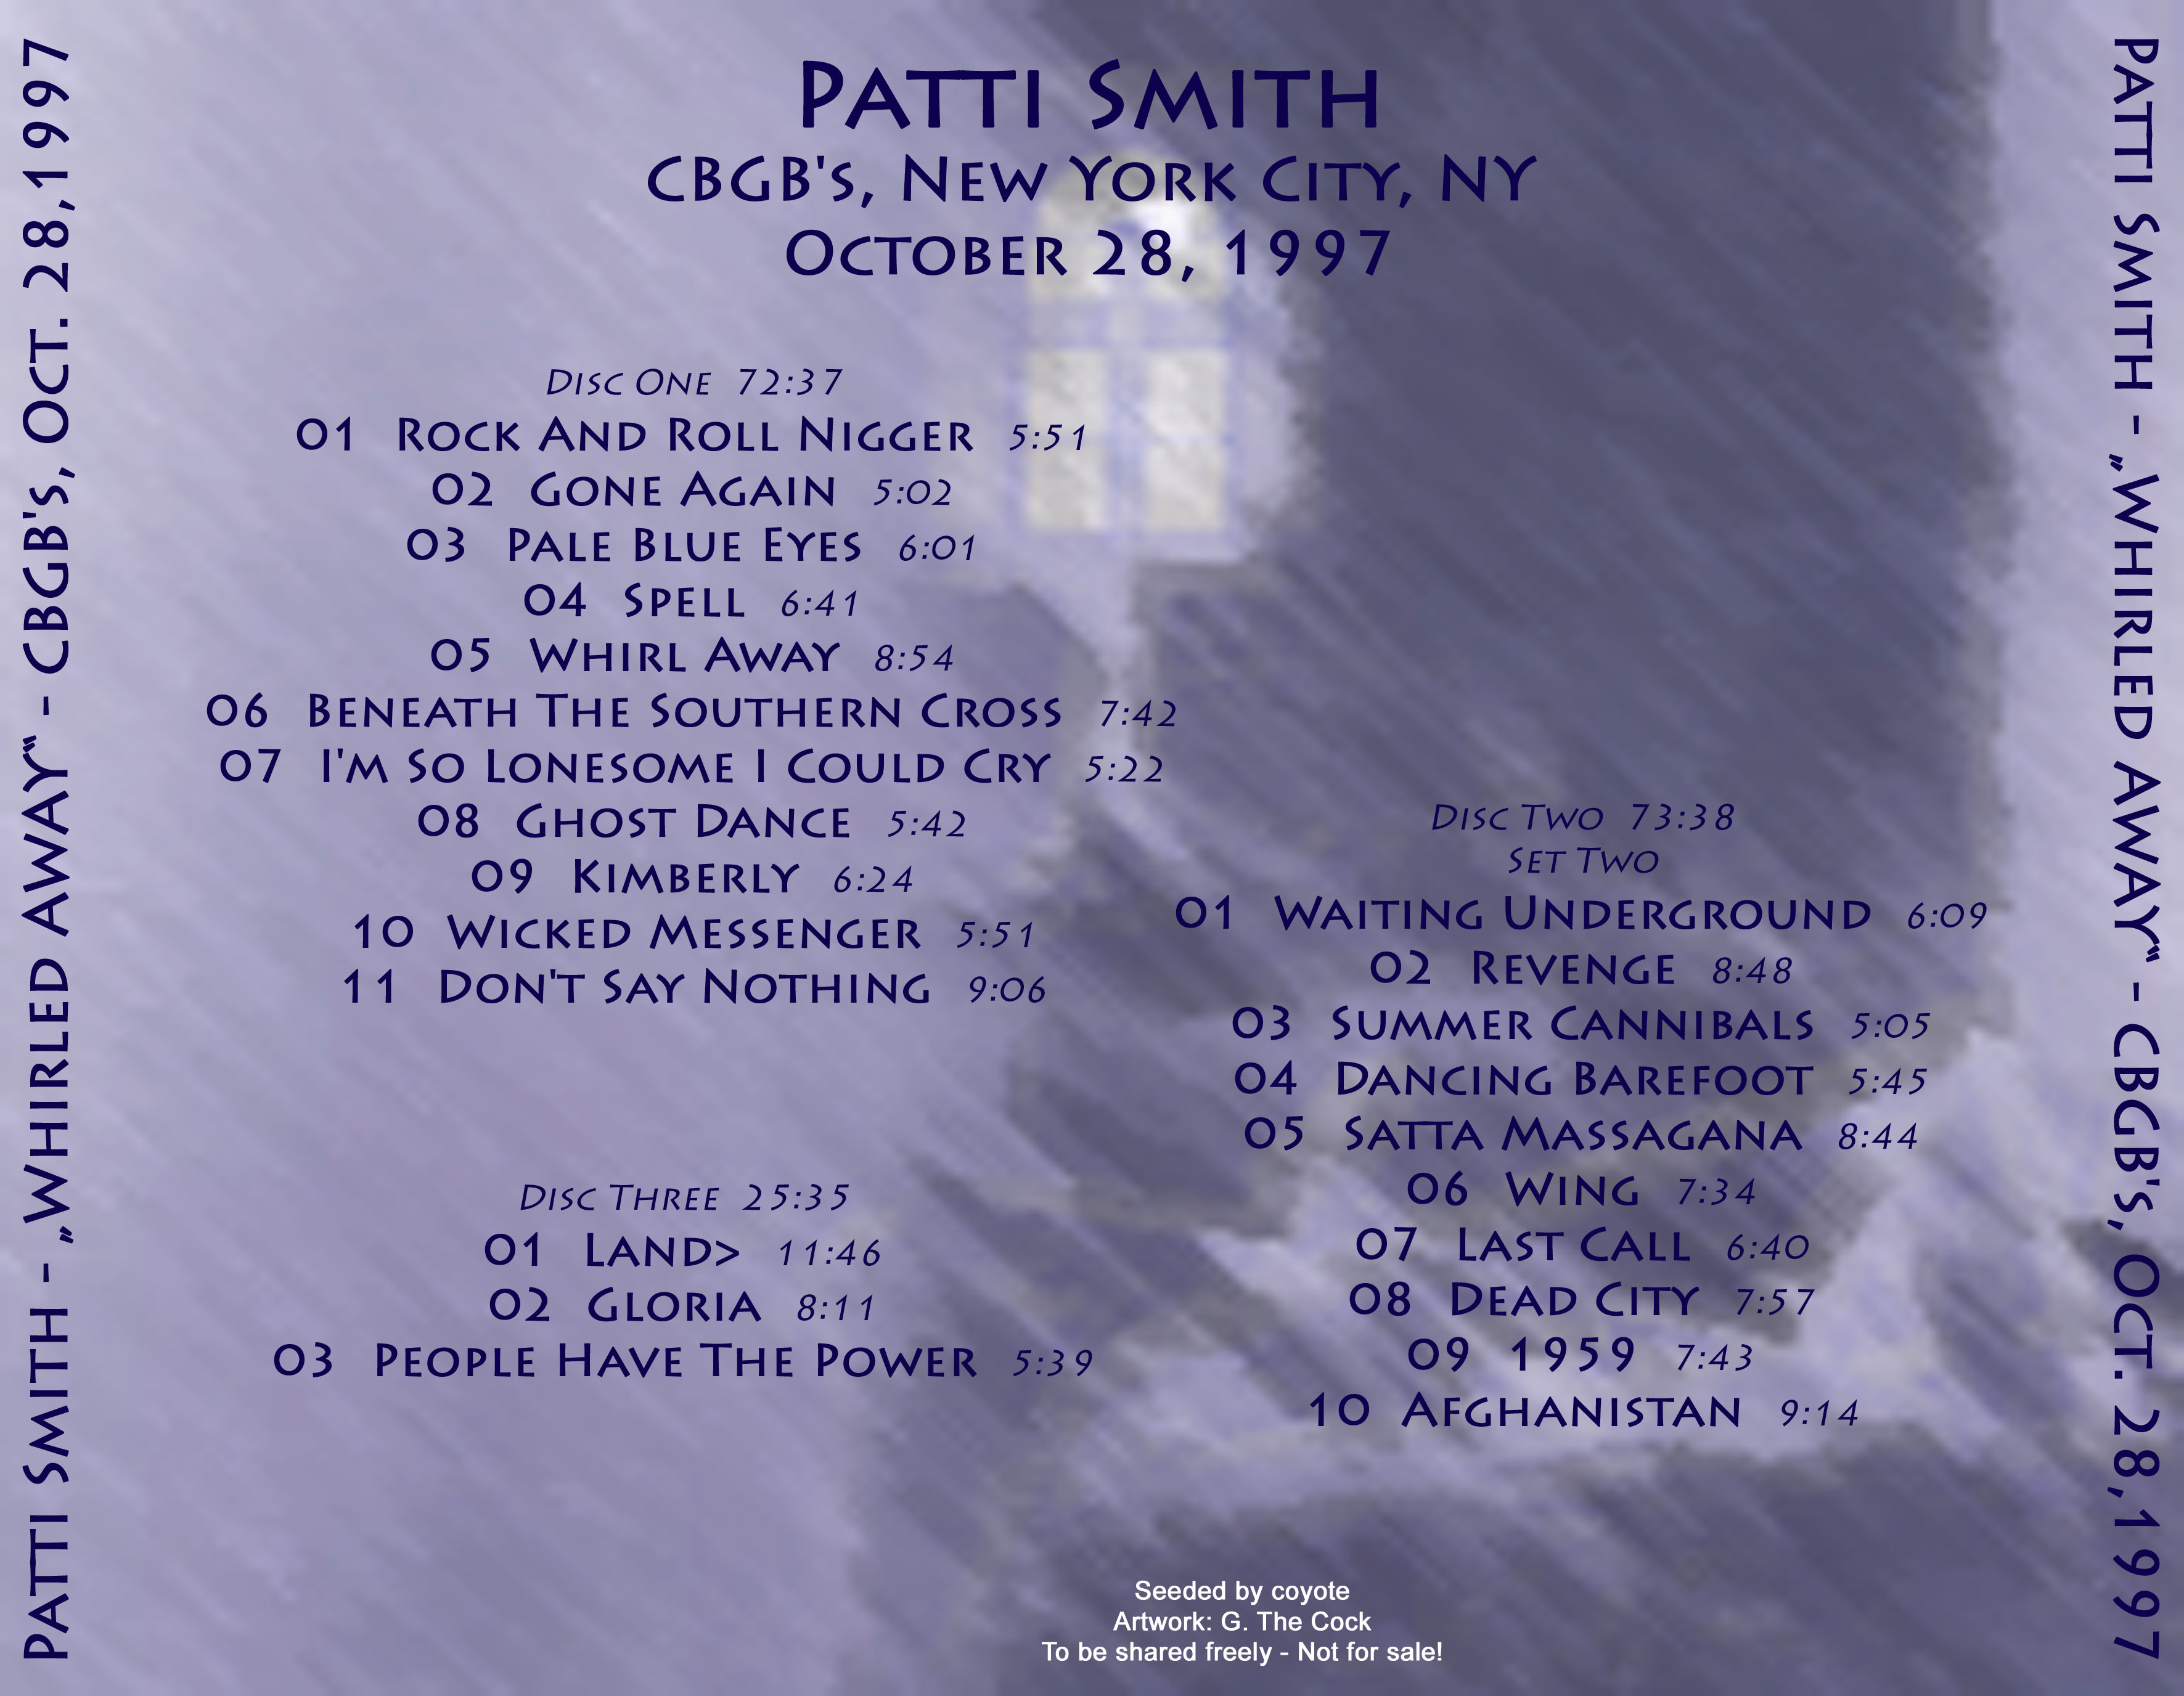 PattiSmith1997-10-28CBGBsNYC (2).jpg